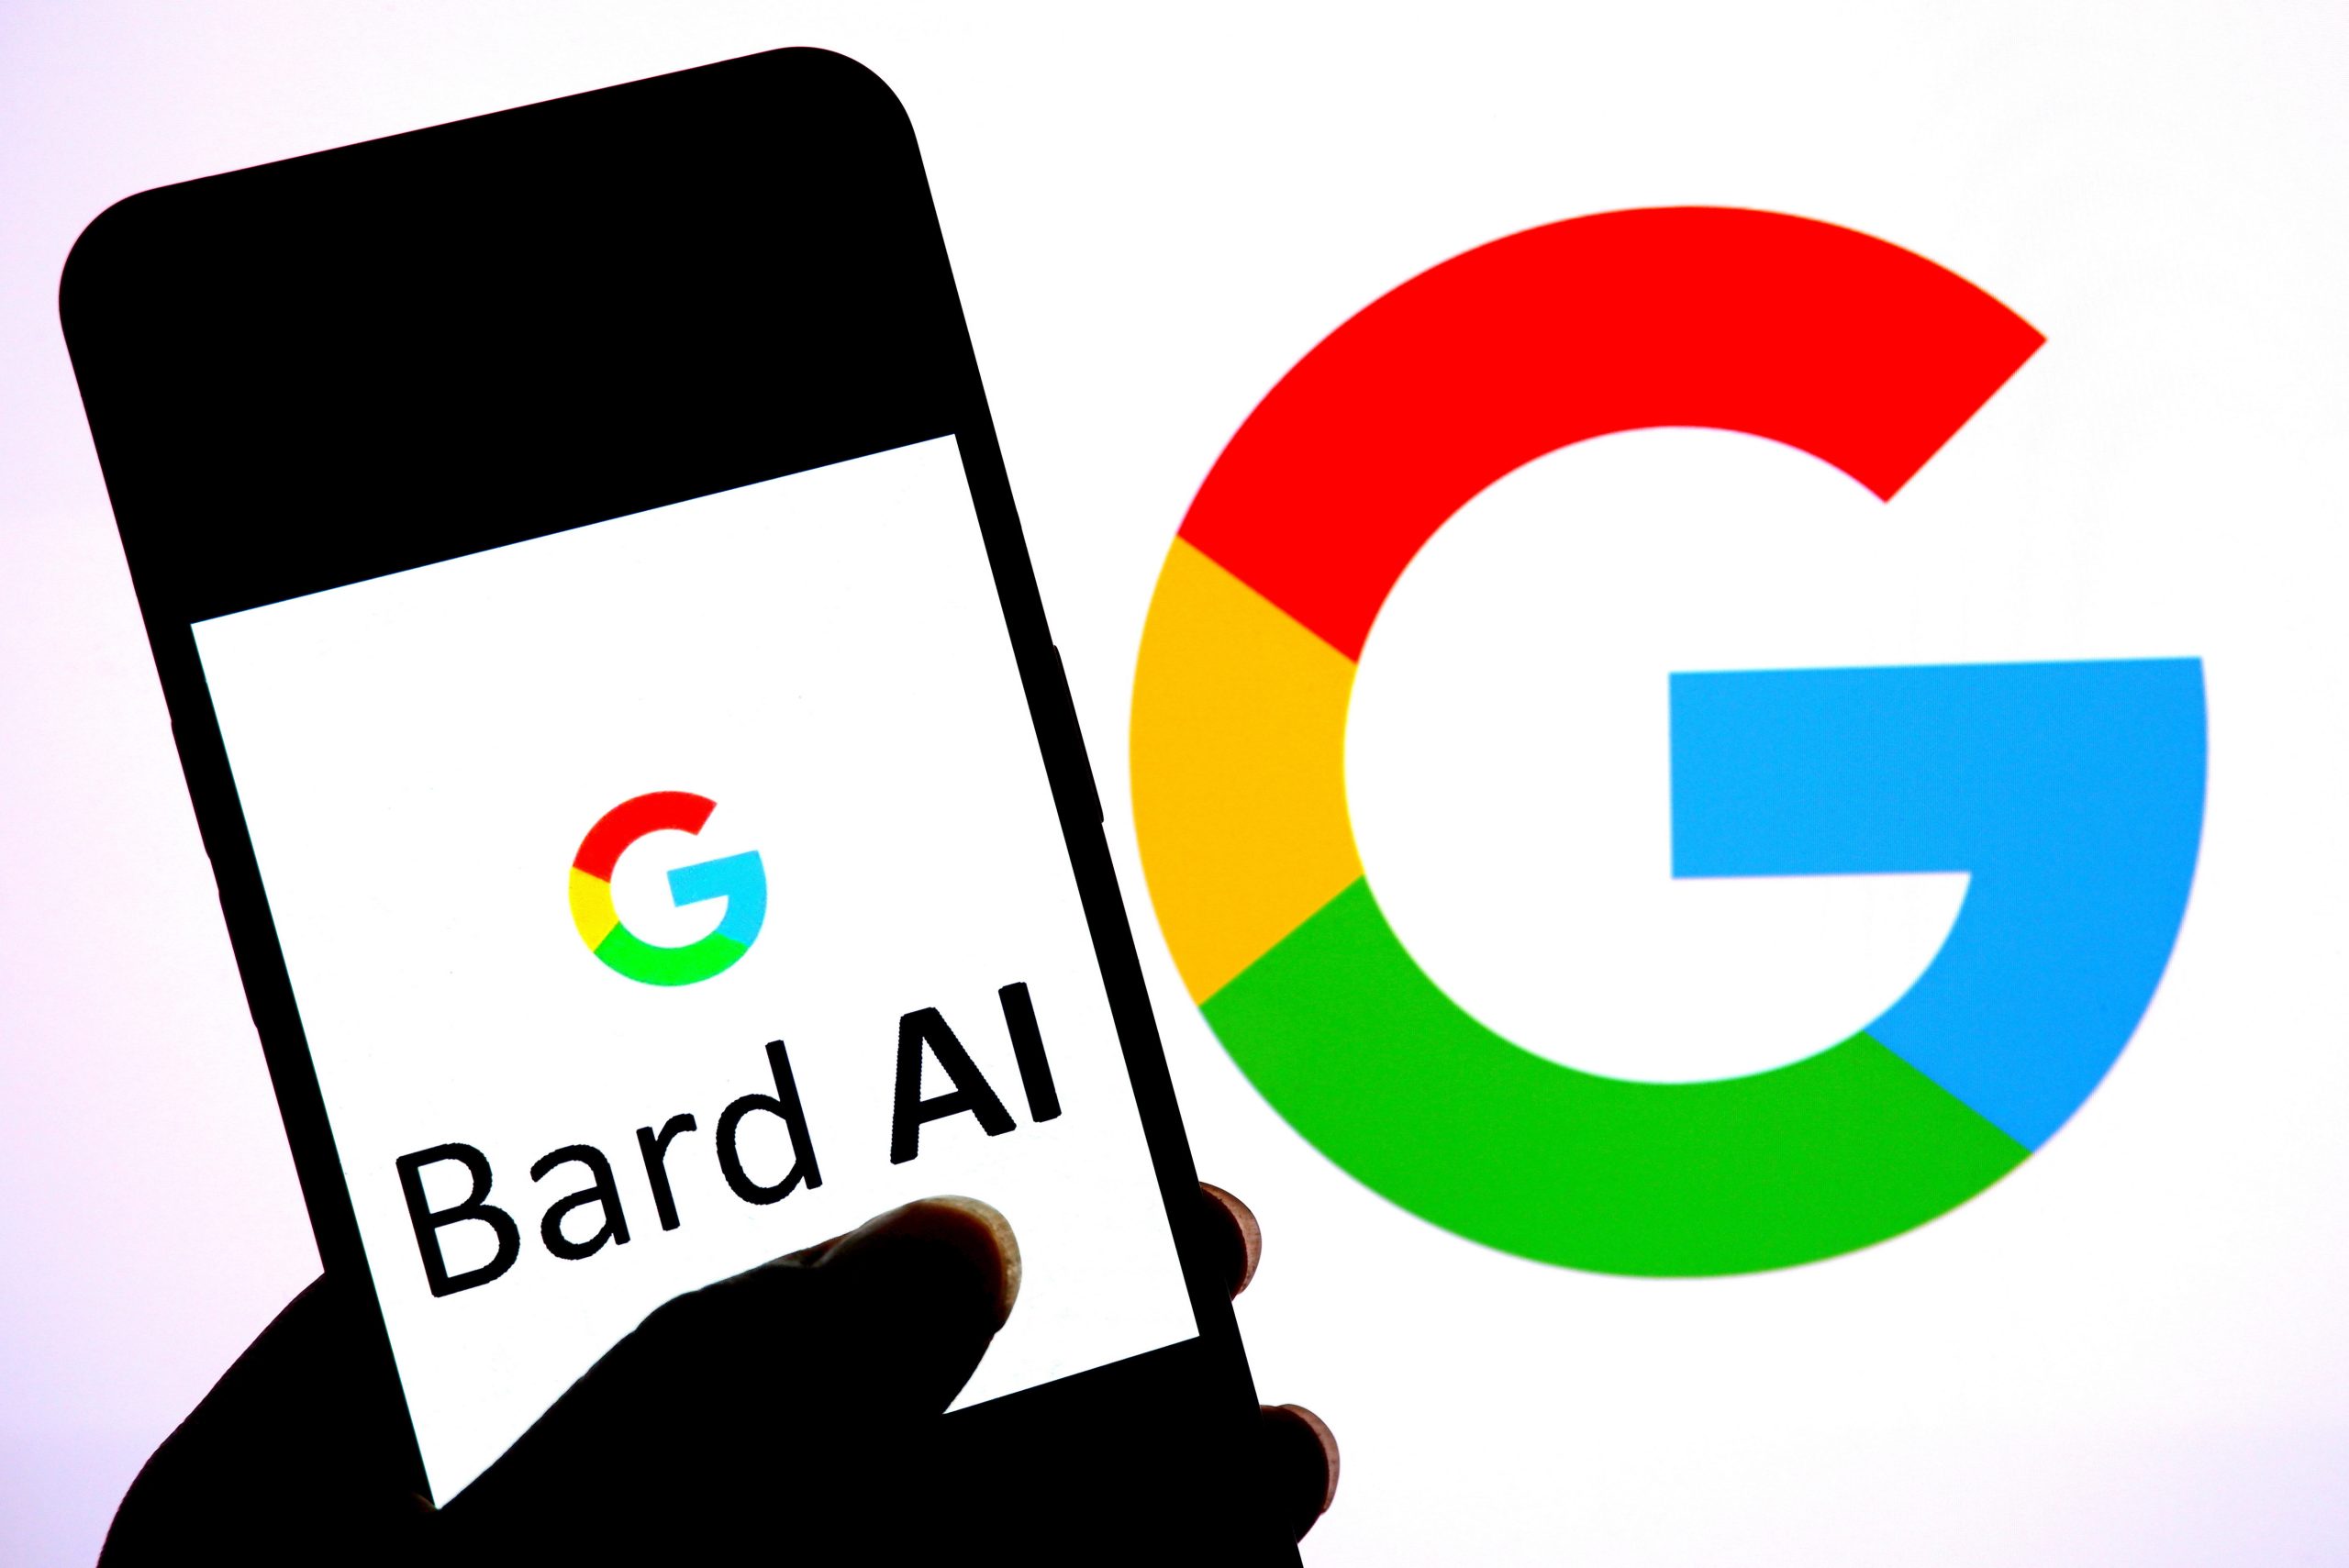 Handy mit Bard AI und Google-Logo